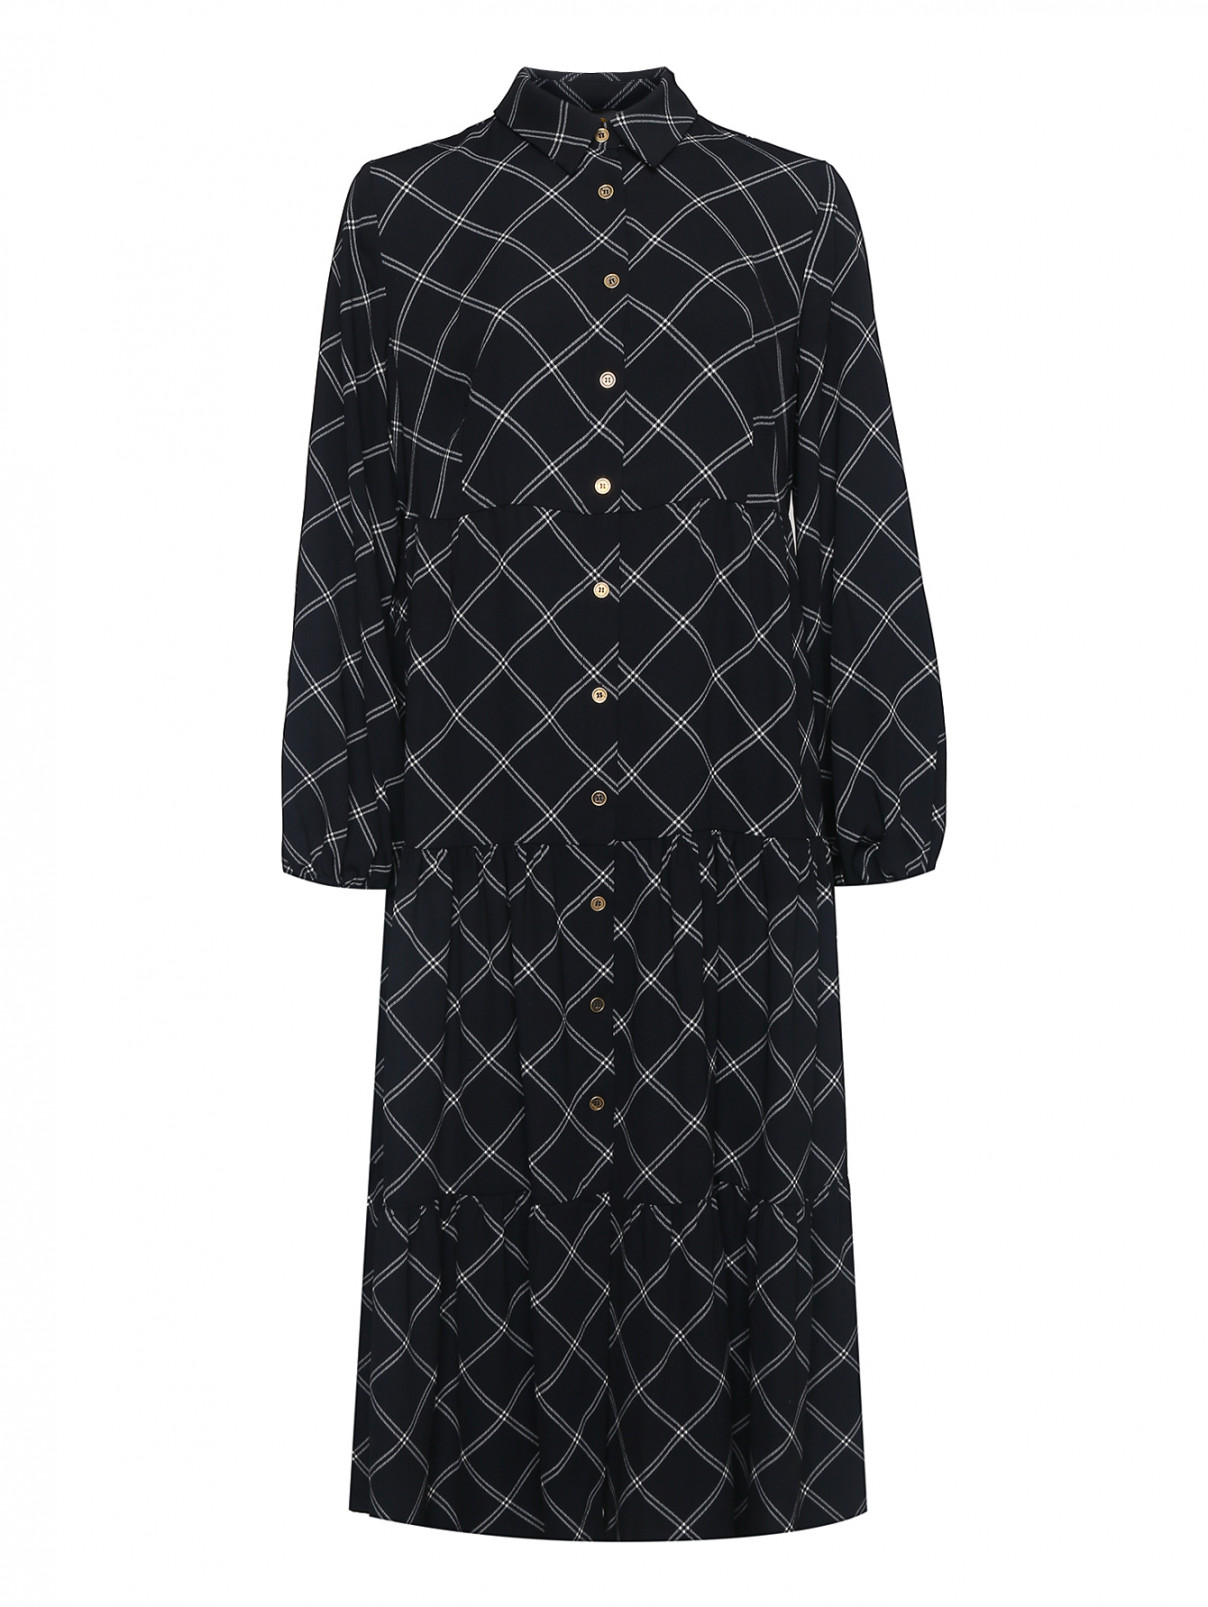 Платье-рубашка с контрастным узором Persona by Marina Rinaldi  –  Общий вид  – Цвет:  Узор